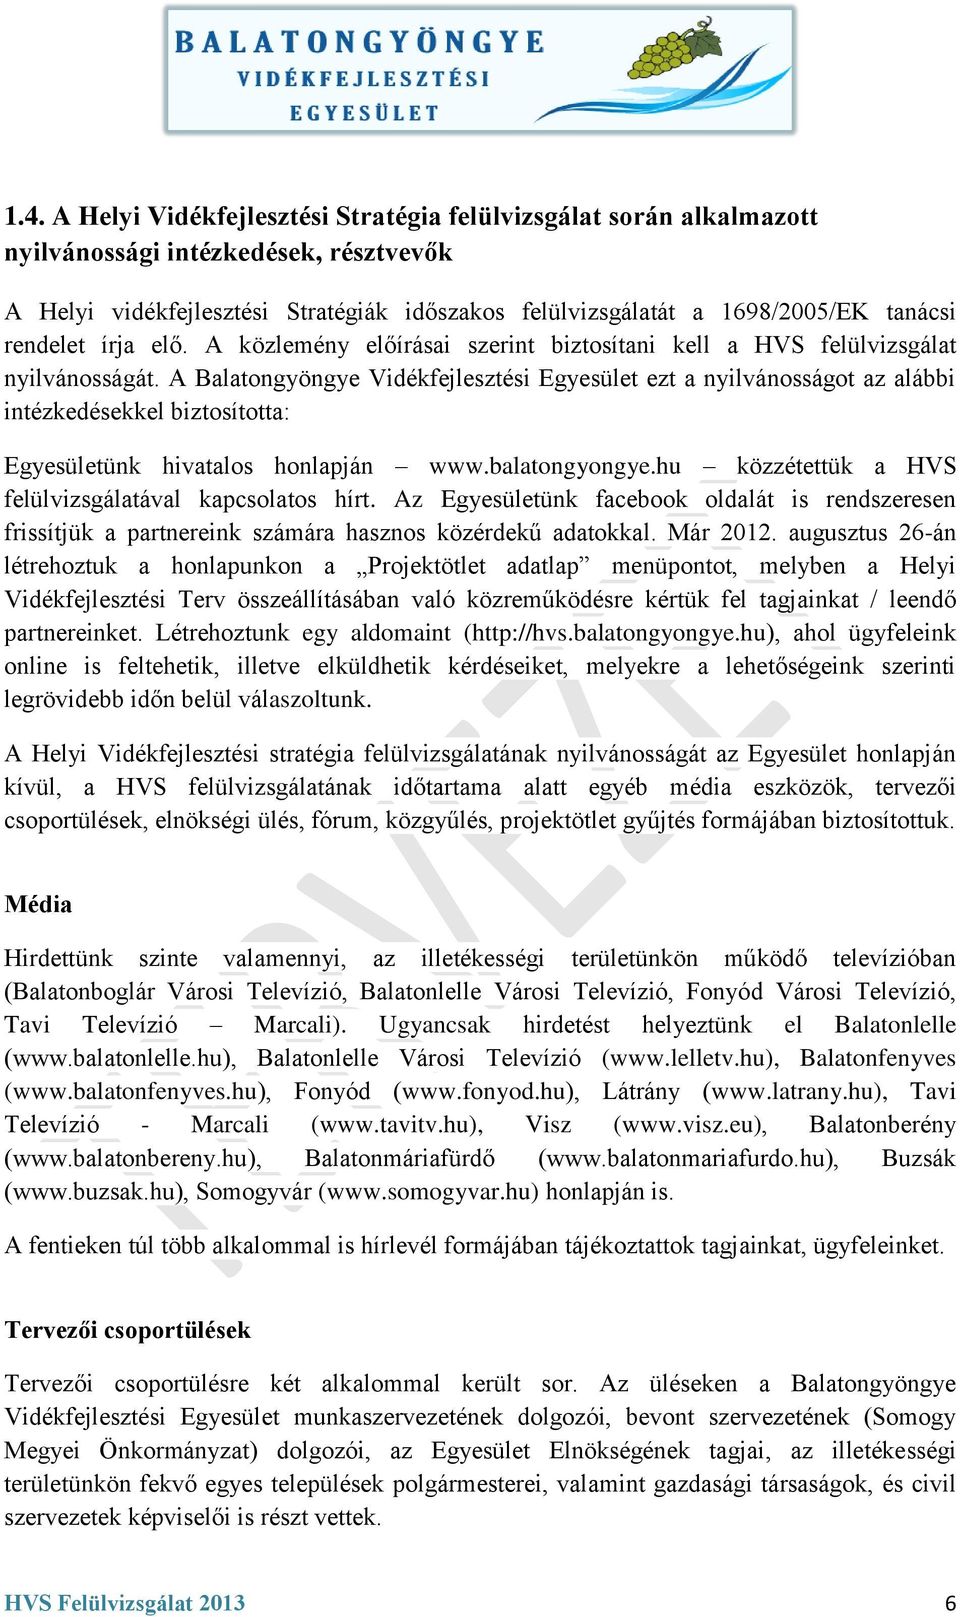 A Balatongyöngye Vidékfejlesztési Egyesület ezt a nyilvánosságot az alábbi intézkedésekkel biztosította: Egyesületünk hivatalos honlapján www.balatongyongye.